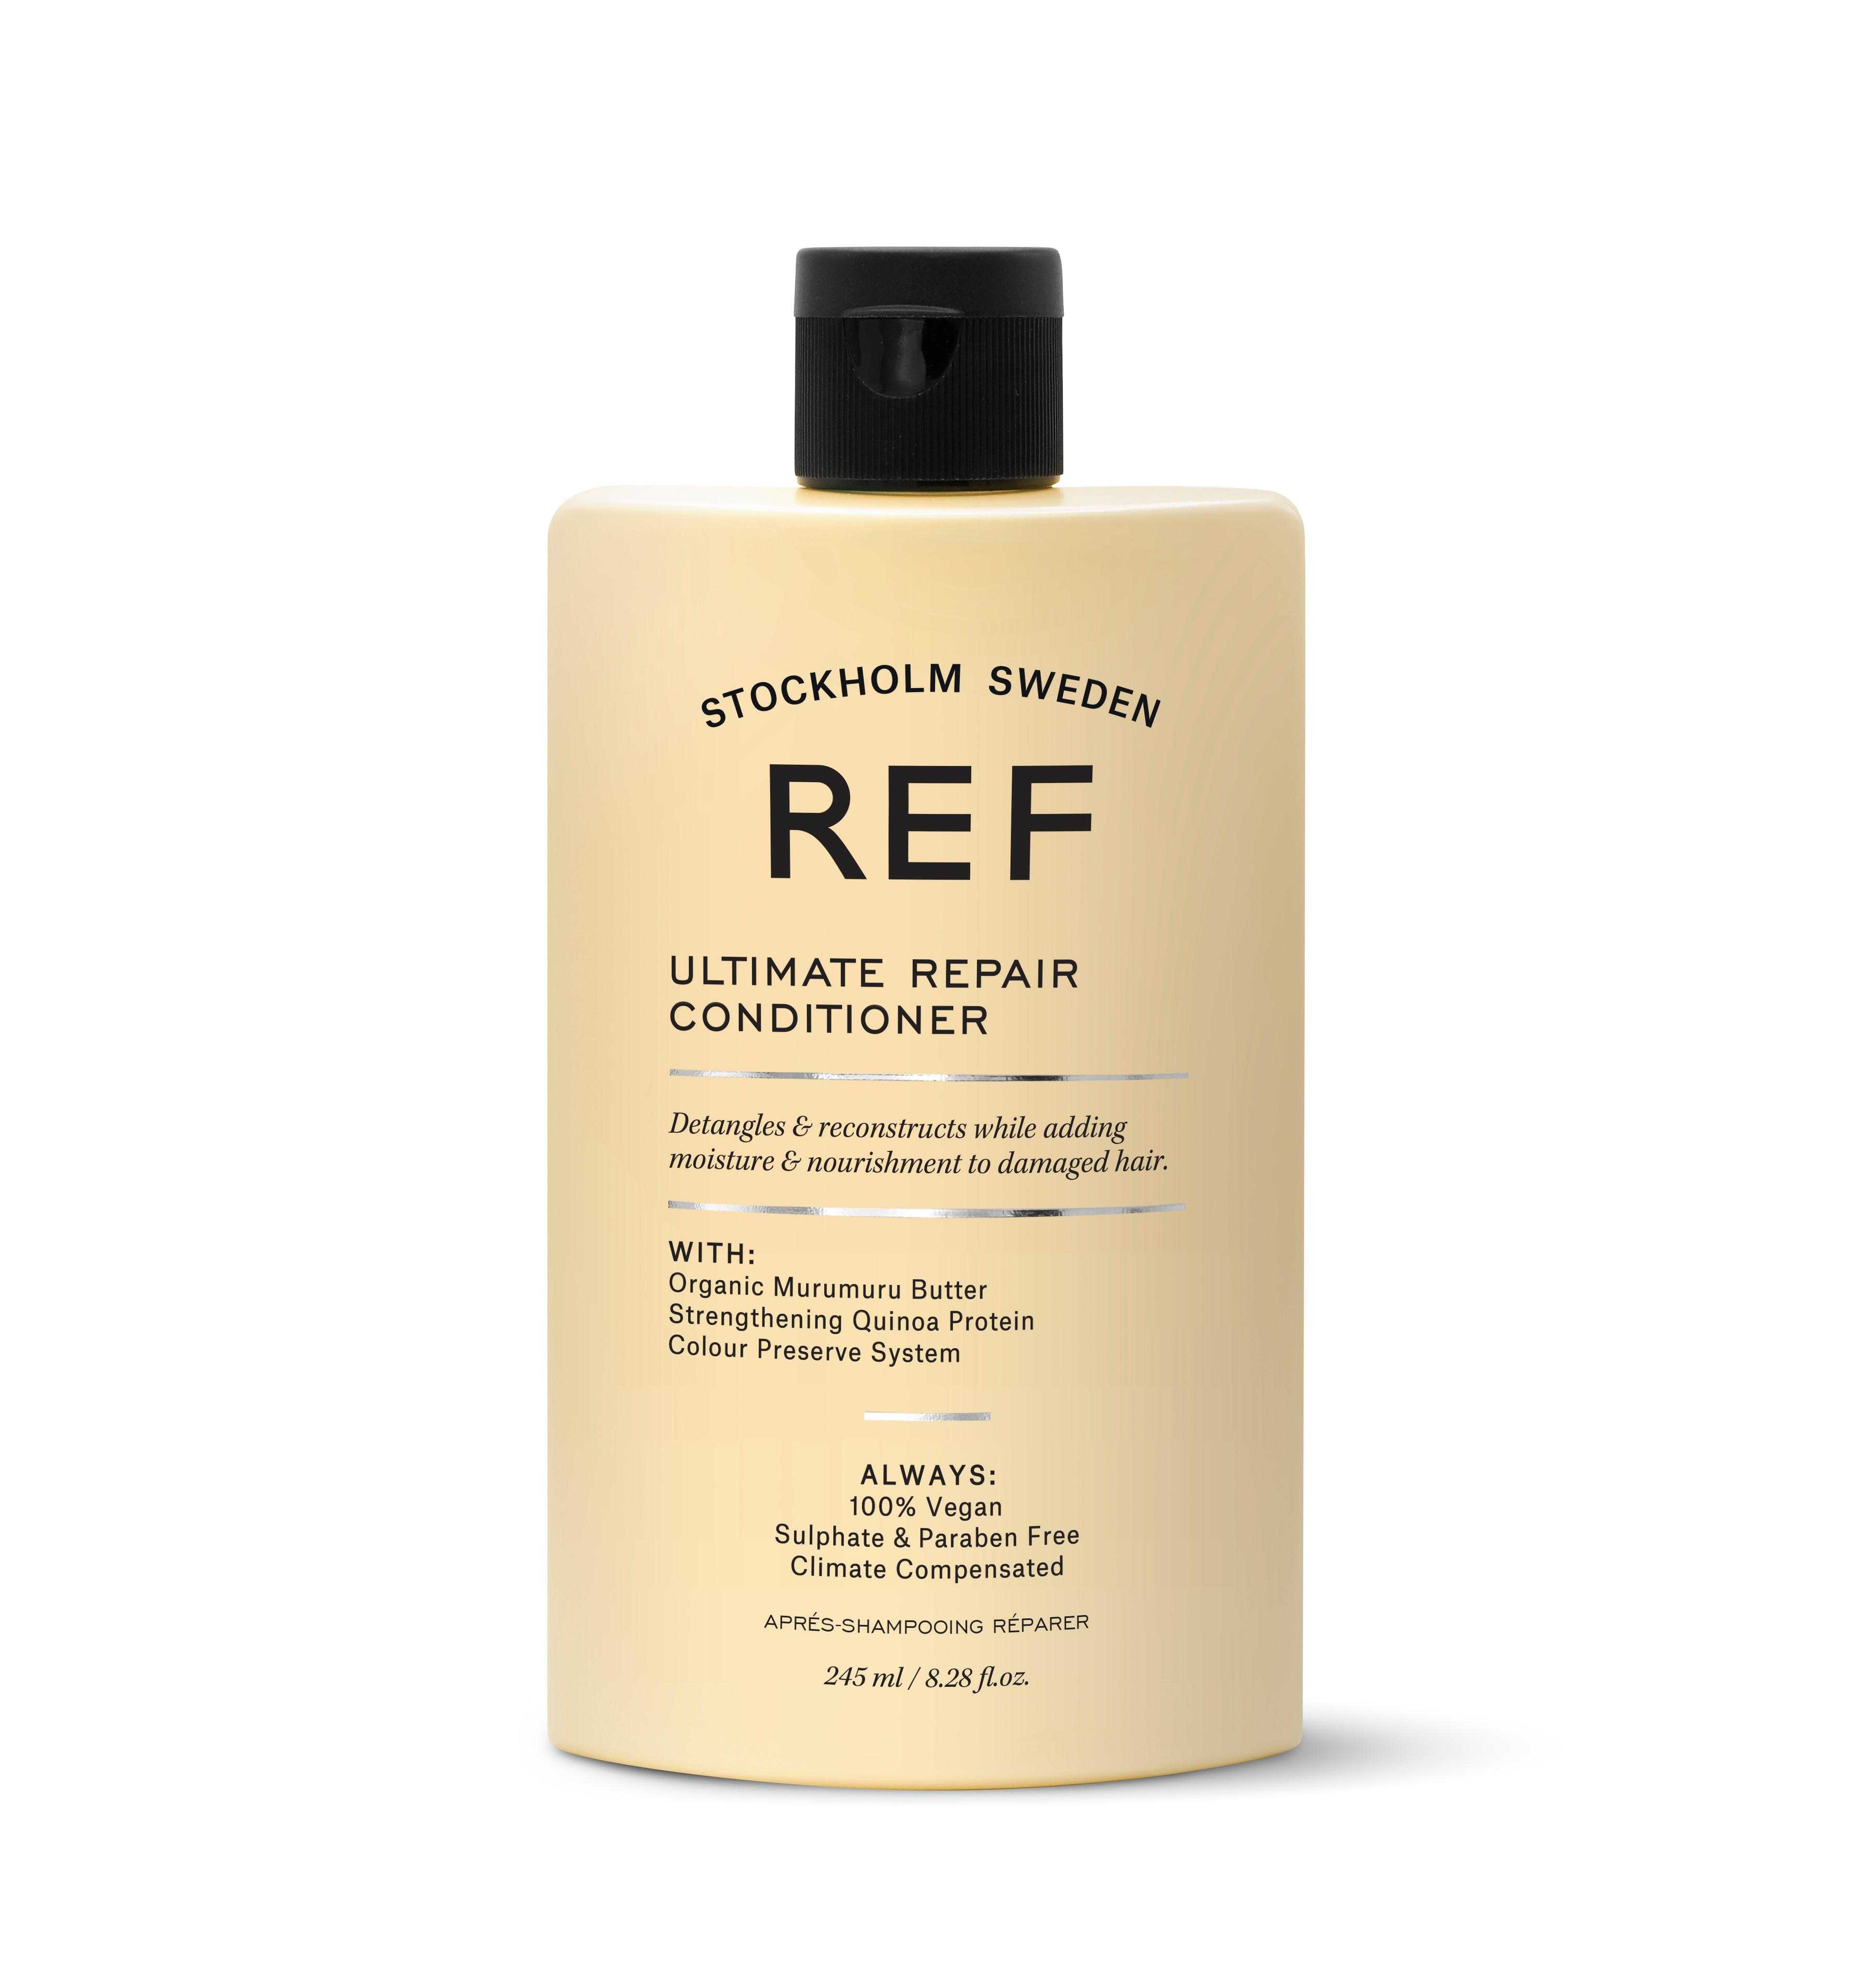 REF Treatment - Ultimate Repair Conditioner